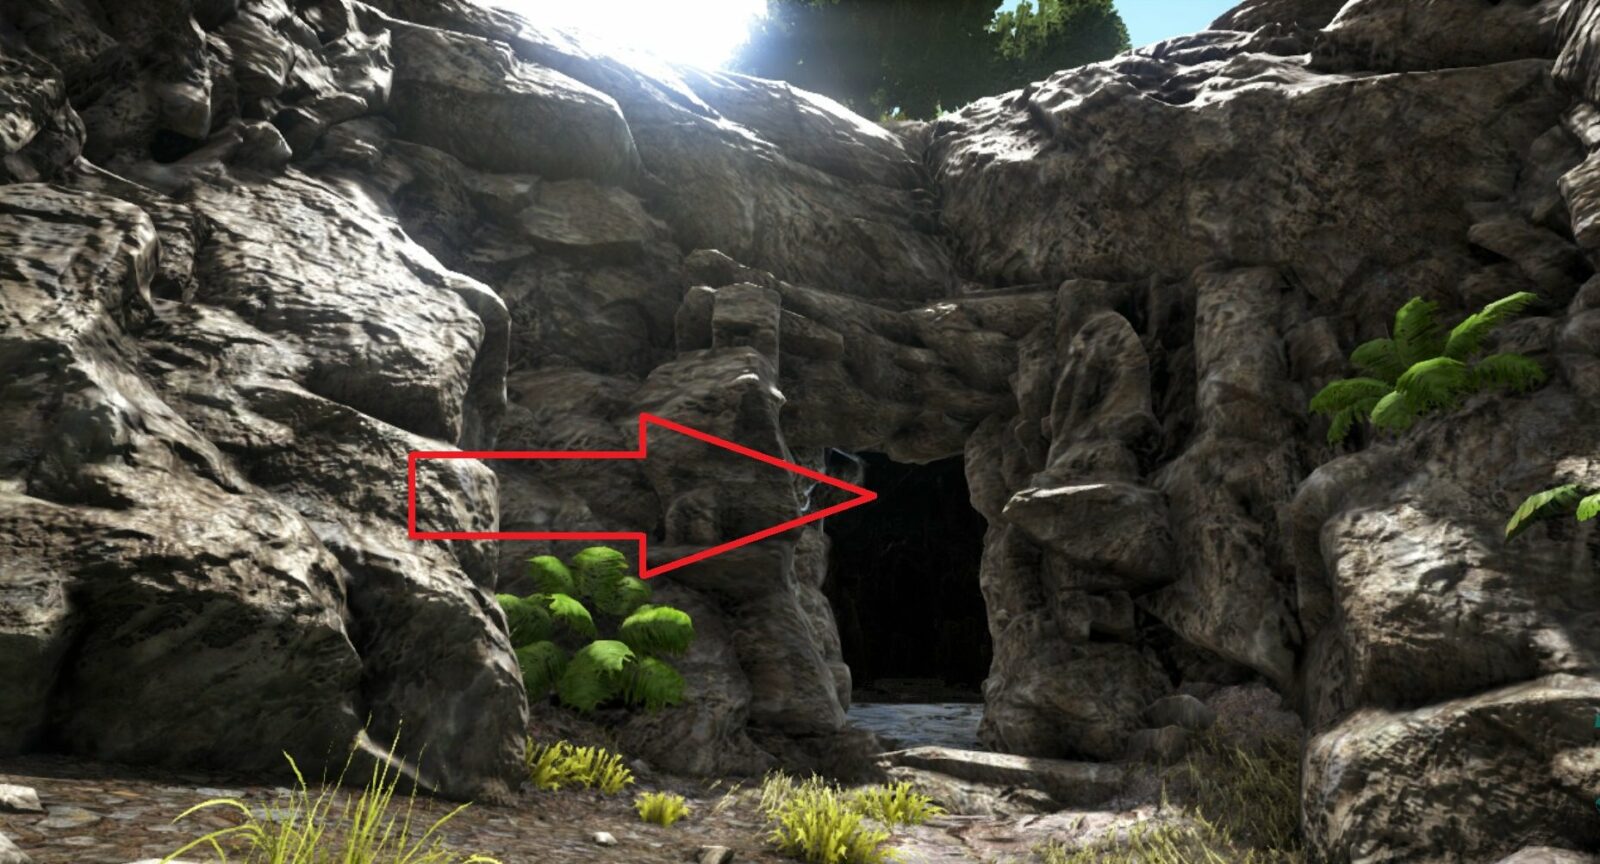 Grotte dell'Arca